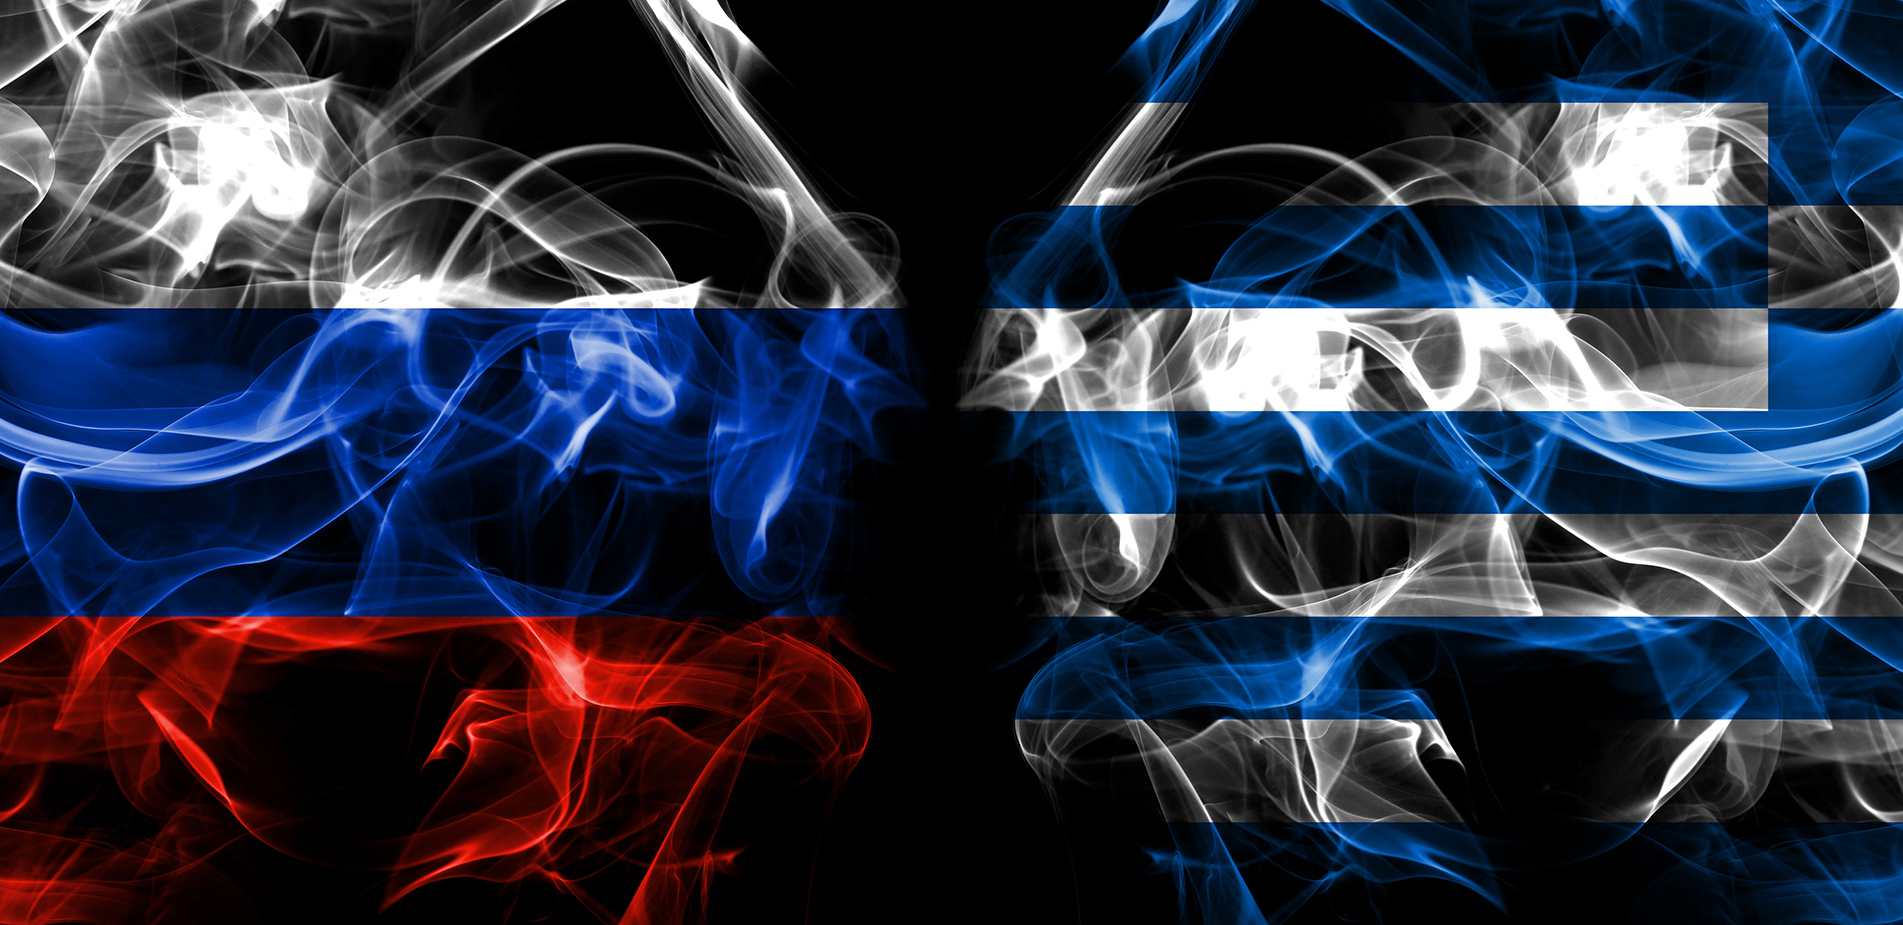 Η ρωσική στήριξη προς την Ελλάδα: Μύθος ή πραγματικότητα;